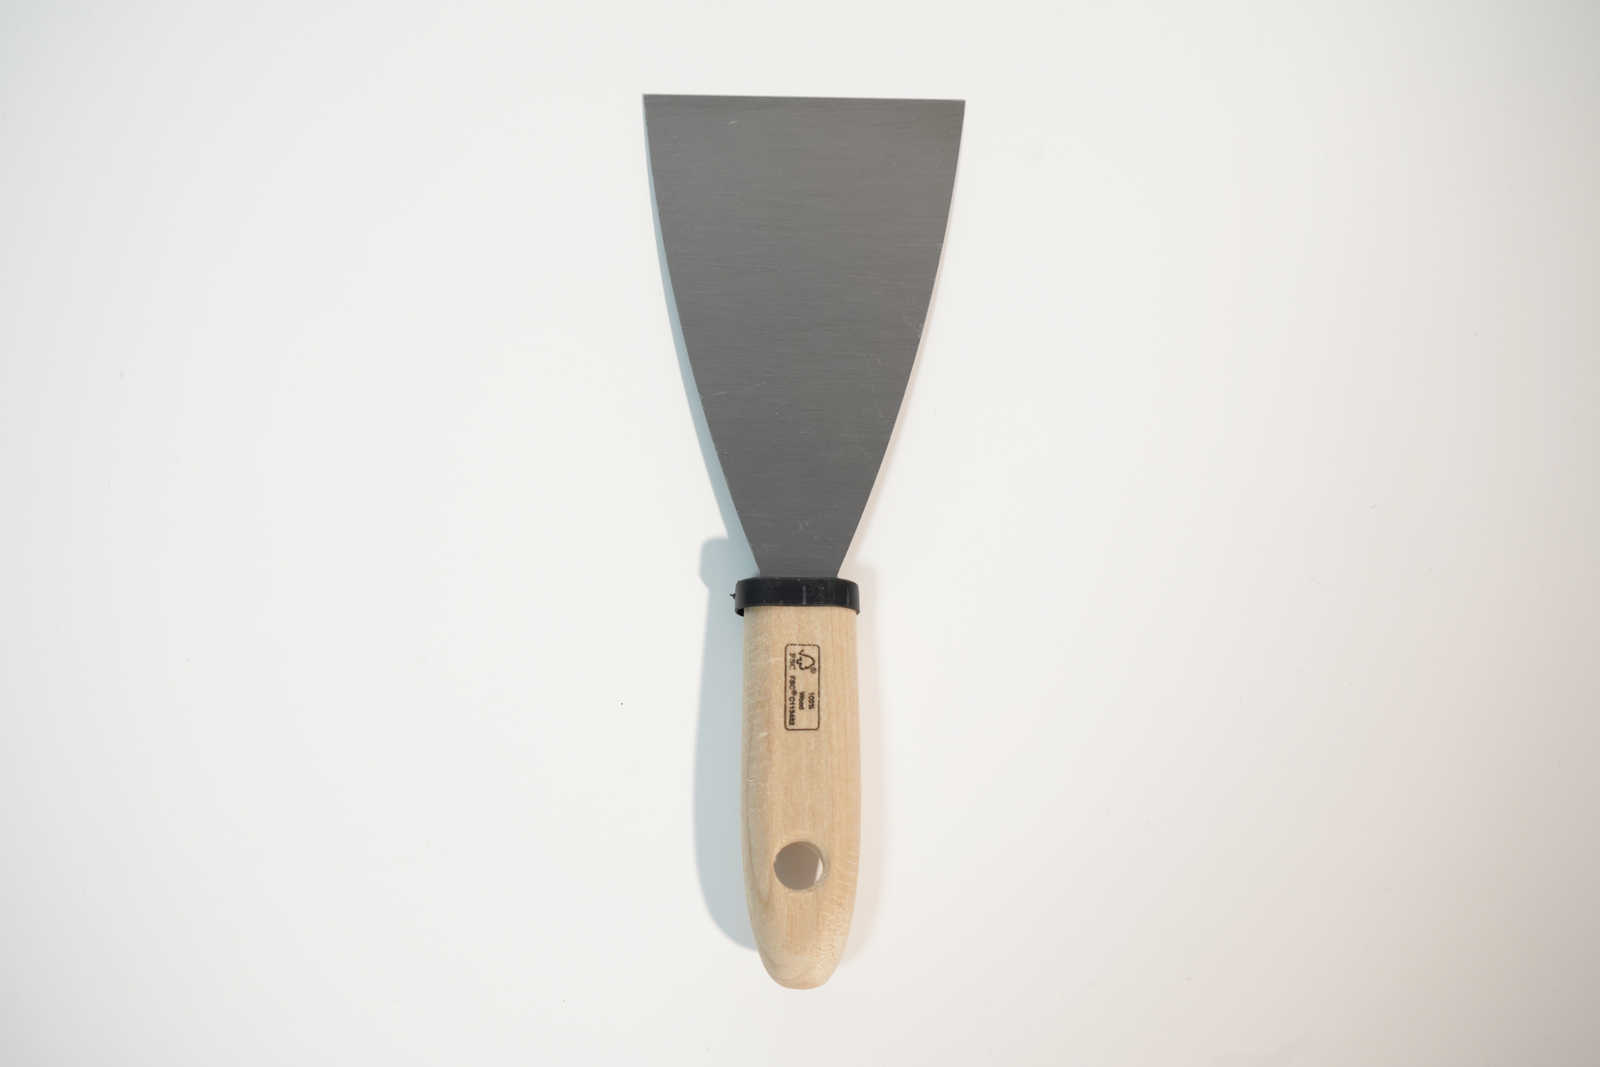             Espátula de pintor de 80 mm con hoja de acero flexible y mango de madera
        